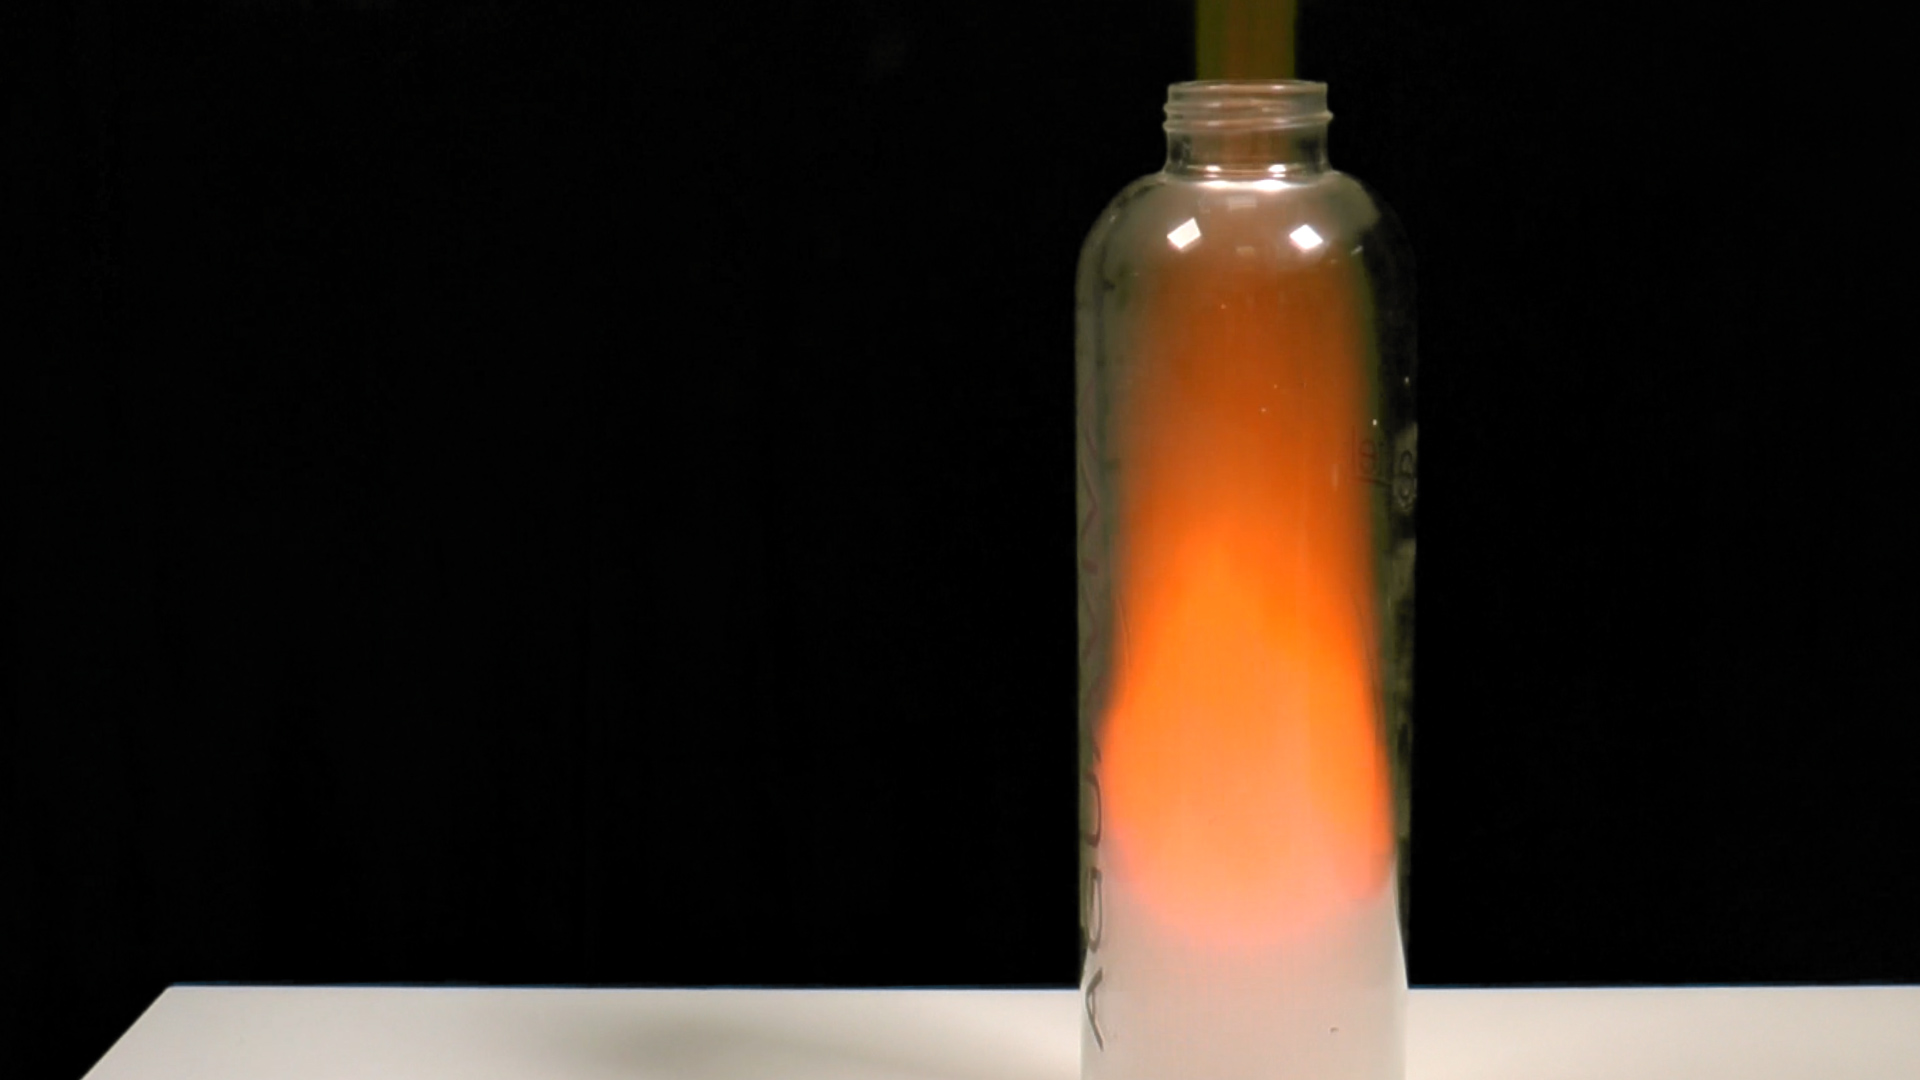 Combustión de etanol para vaciar una botella - Fundación Aquae